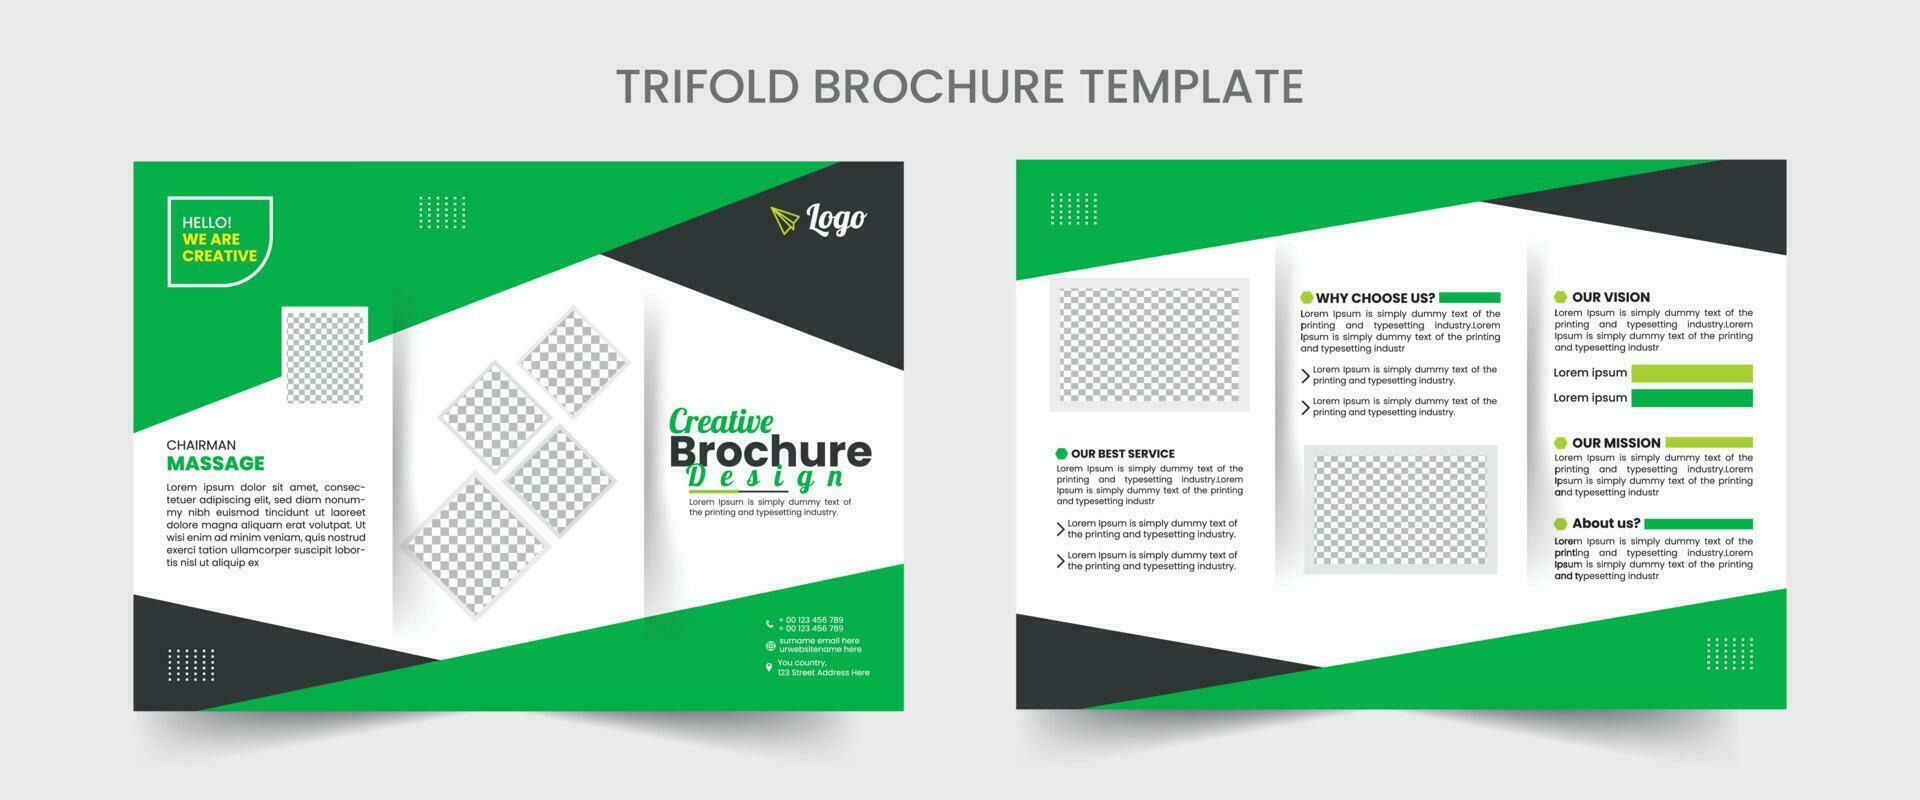 företag broschyr mall i tri vika ihop layout. företags- design folder med minimal design mall i a4. vektor